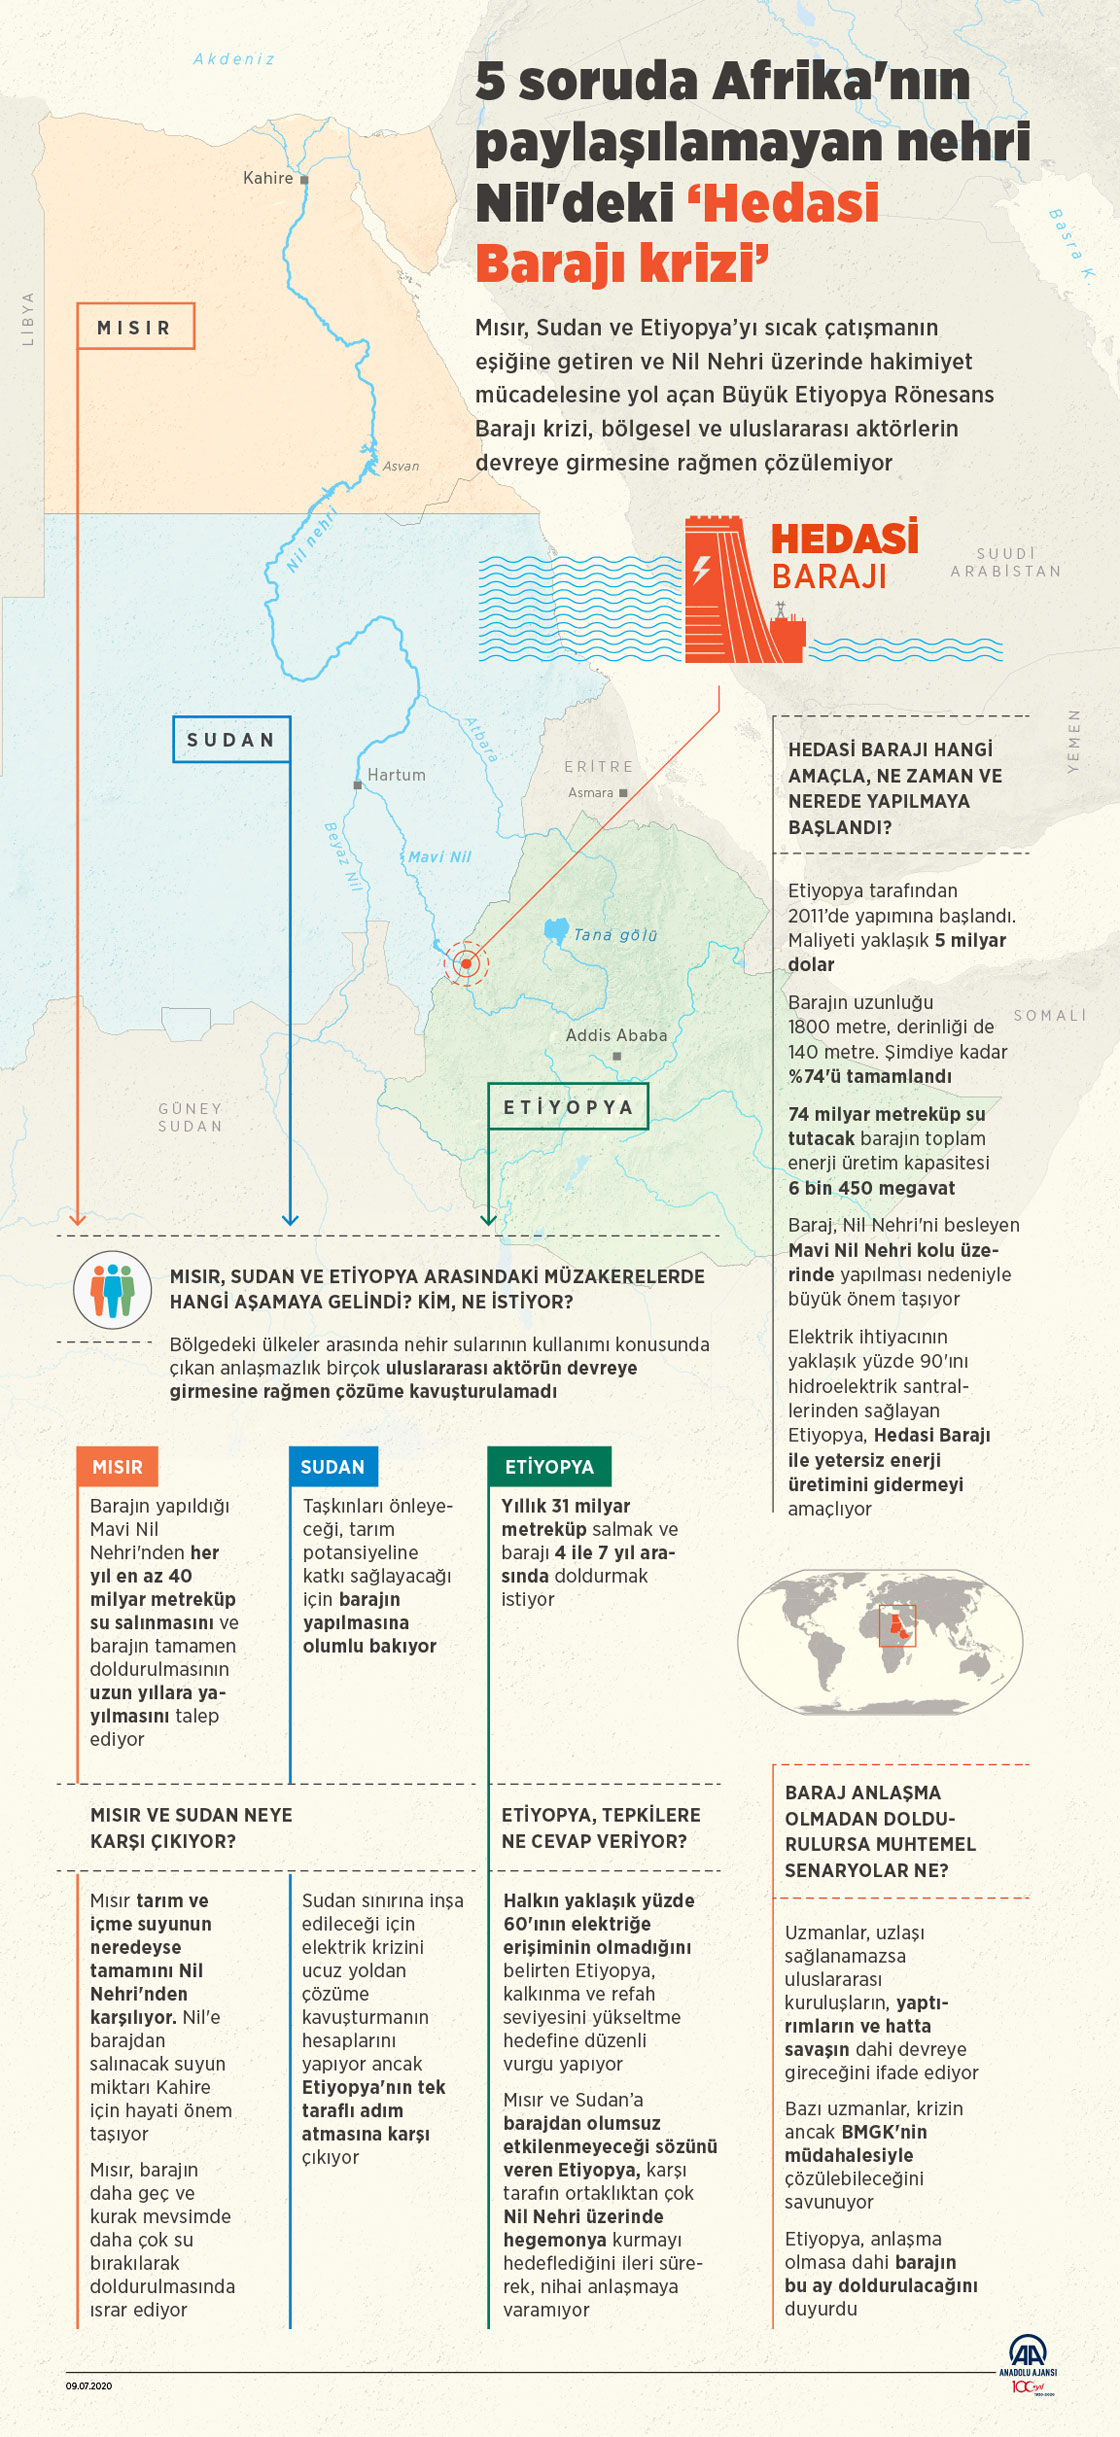 5 soruda Afrika'nın paylaşılamayan nehri Nil'deki Hedasi Barajı krizi